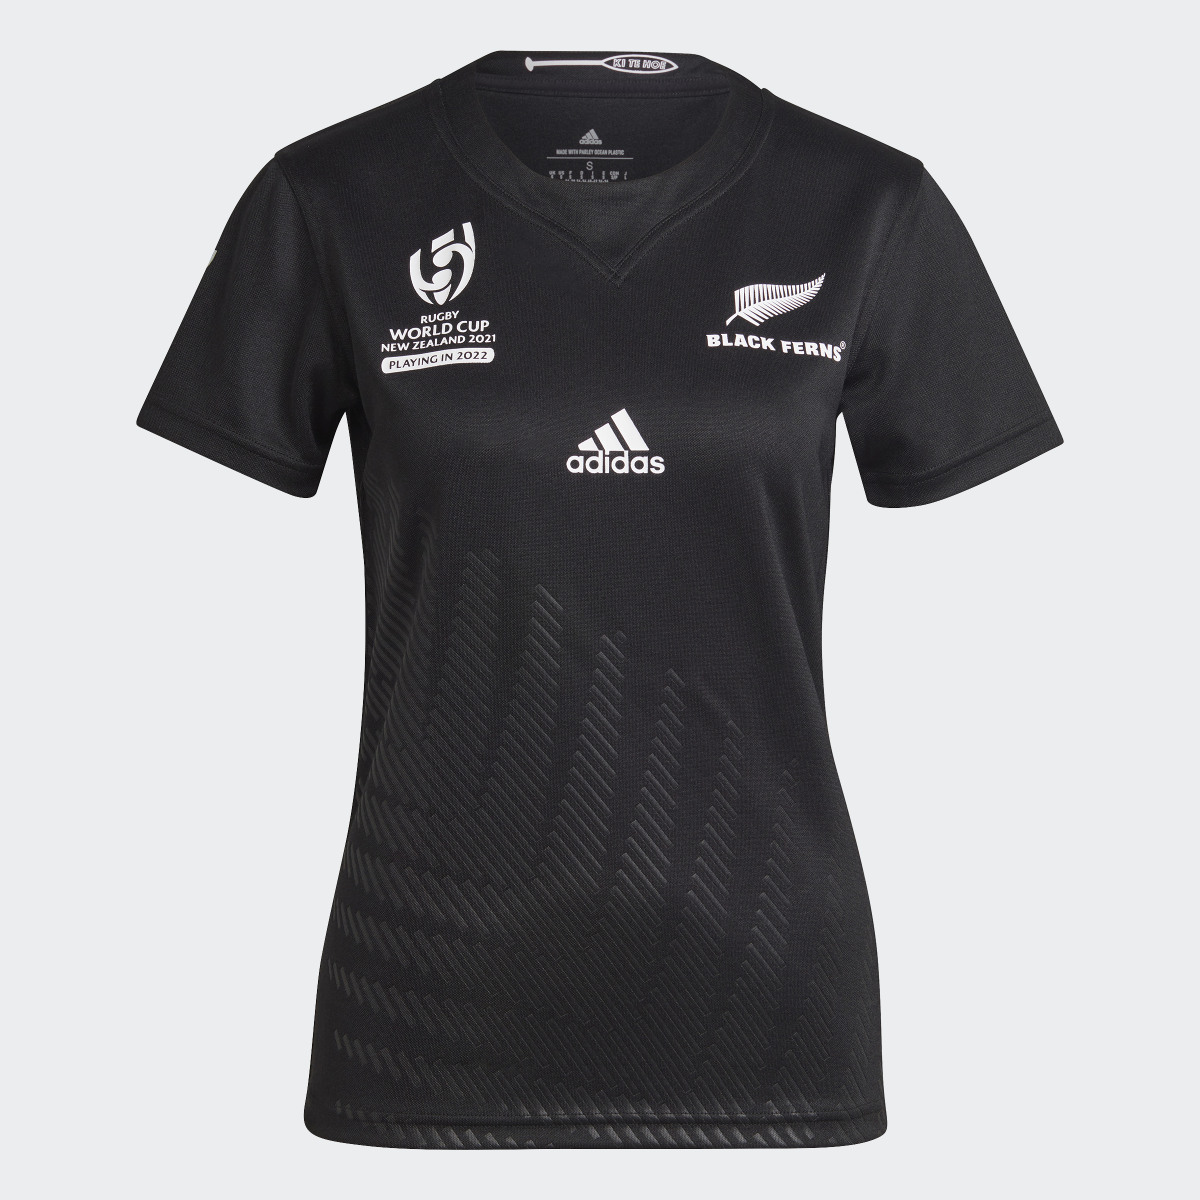 Adidas Camiseta primera equipación Black Ferns Rugby World Cup. 9